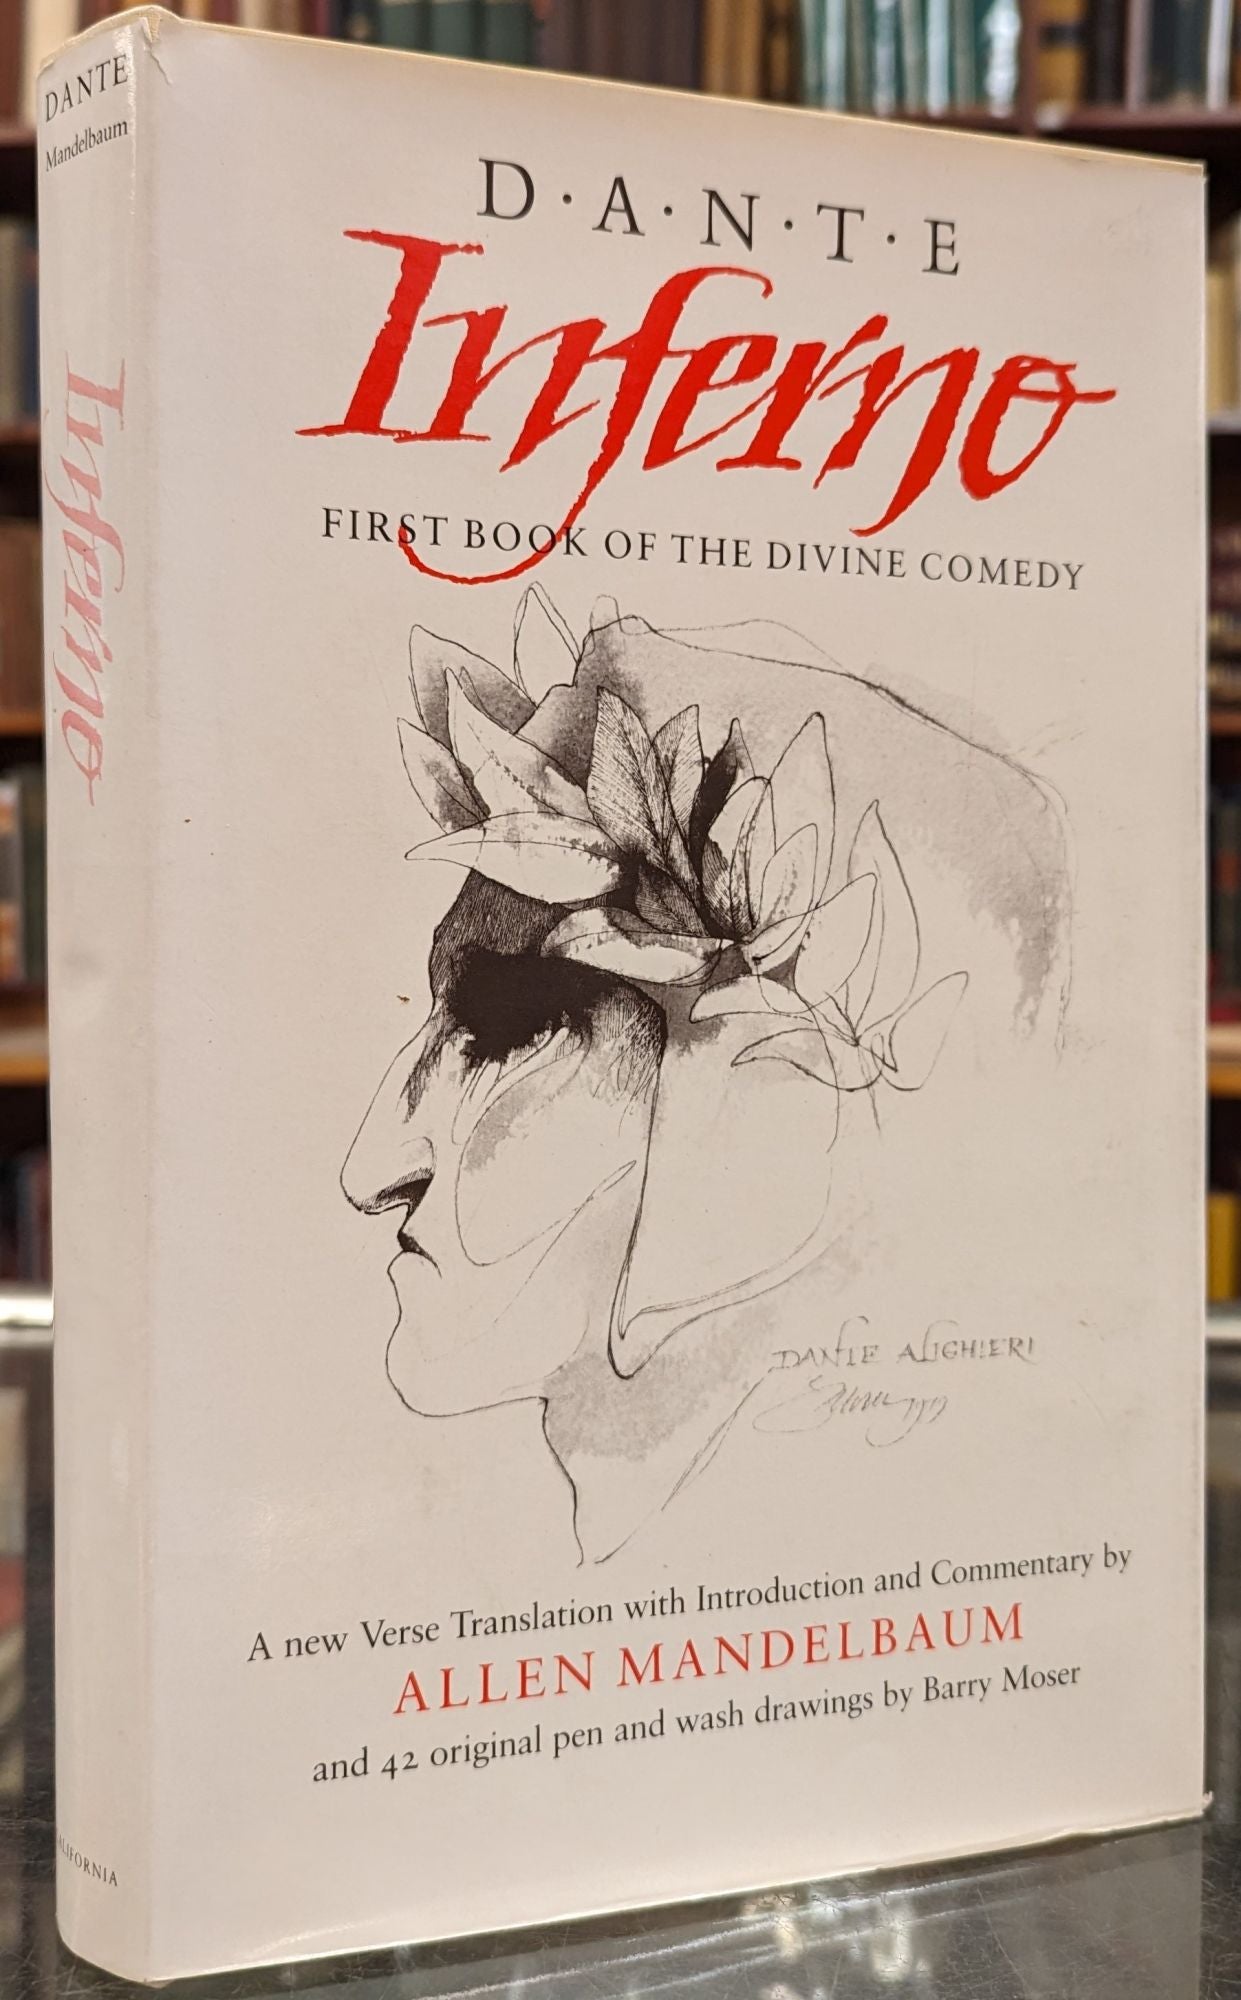 The Divine Comedy Vol.1: Inferno: Dante Alighieri-1977 Pb Ed  Literature/Classic